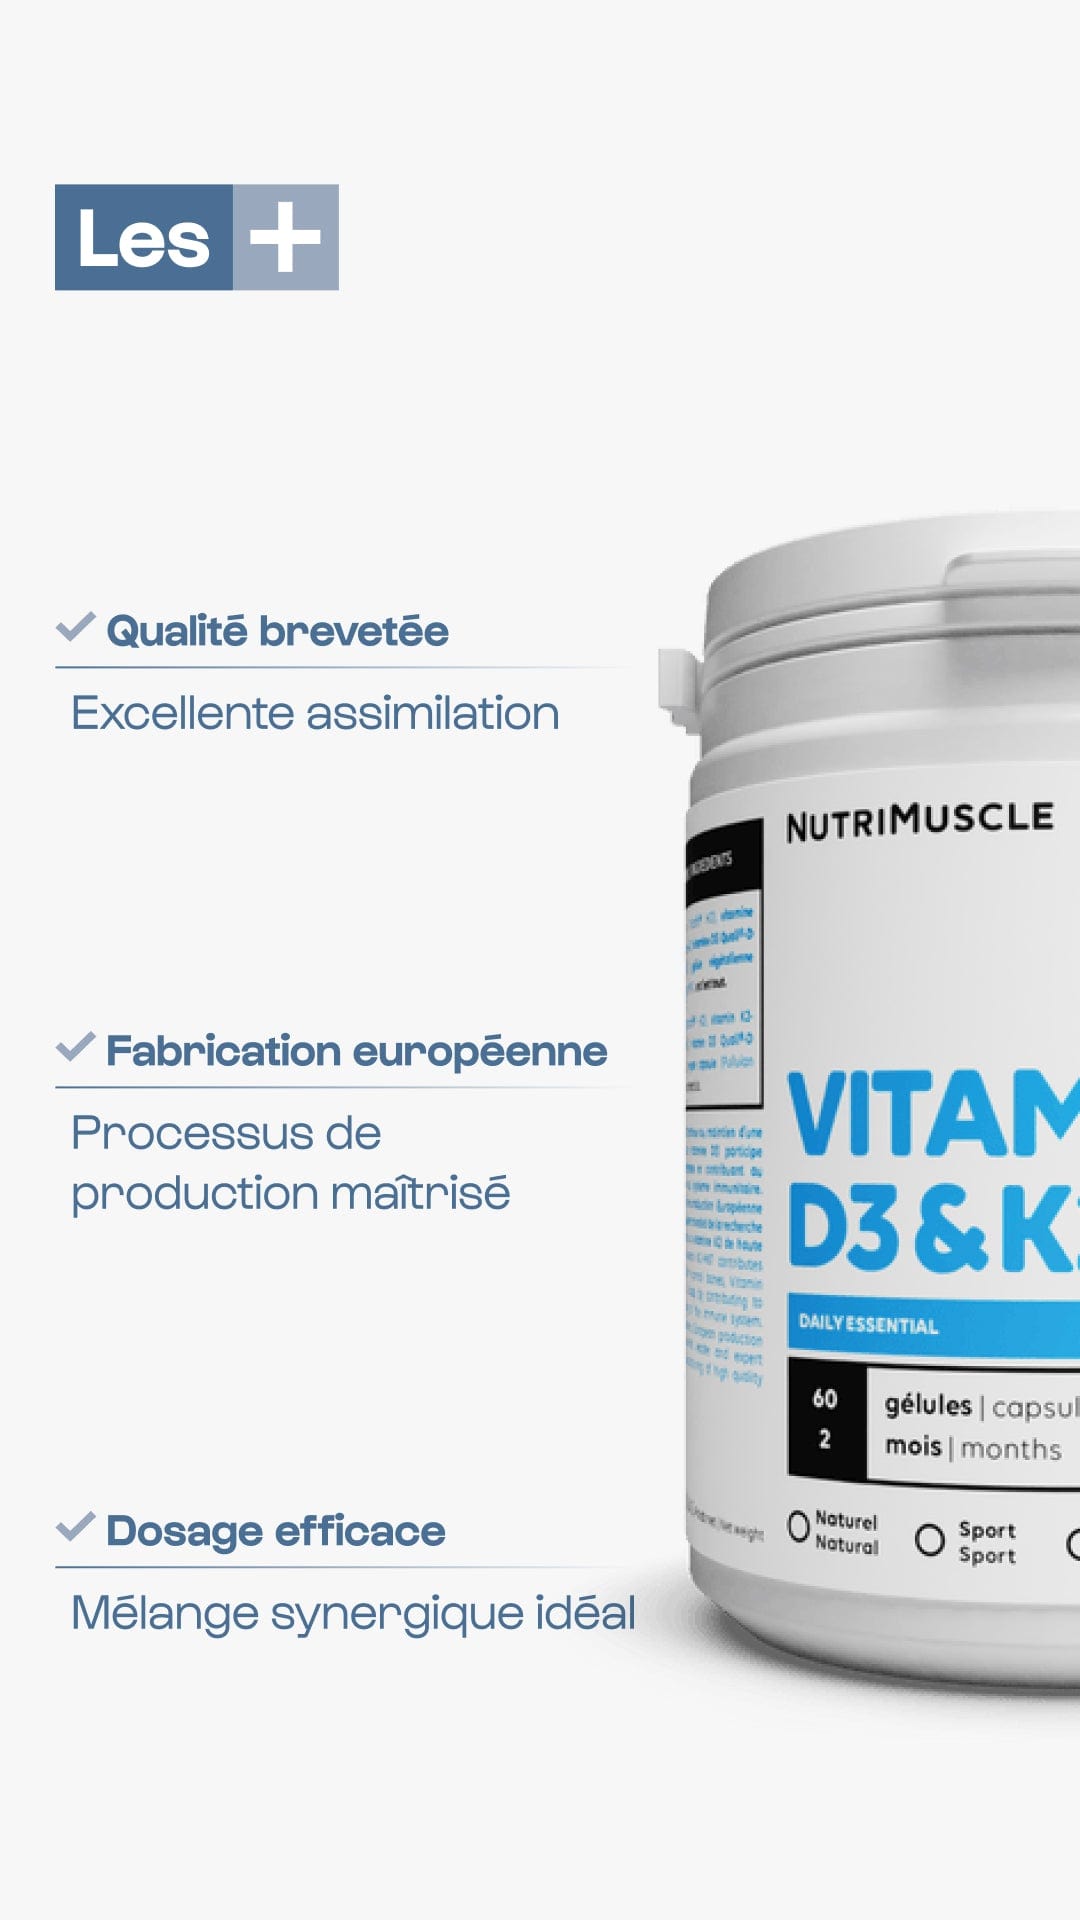 Nutrimuscle Vitamines Vitamines D3 + K2-MK7